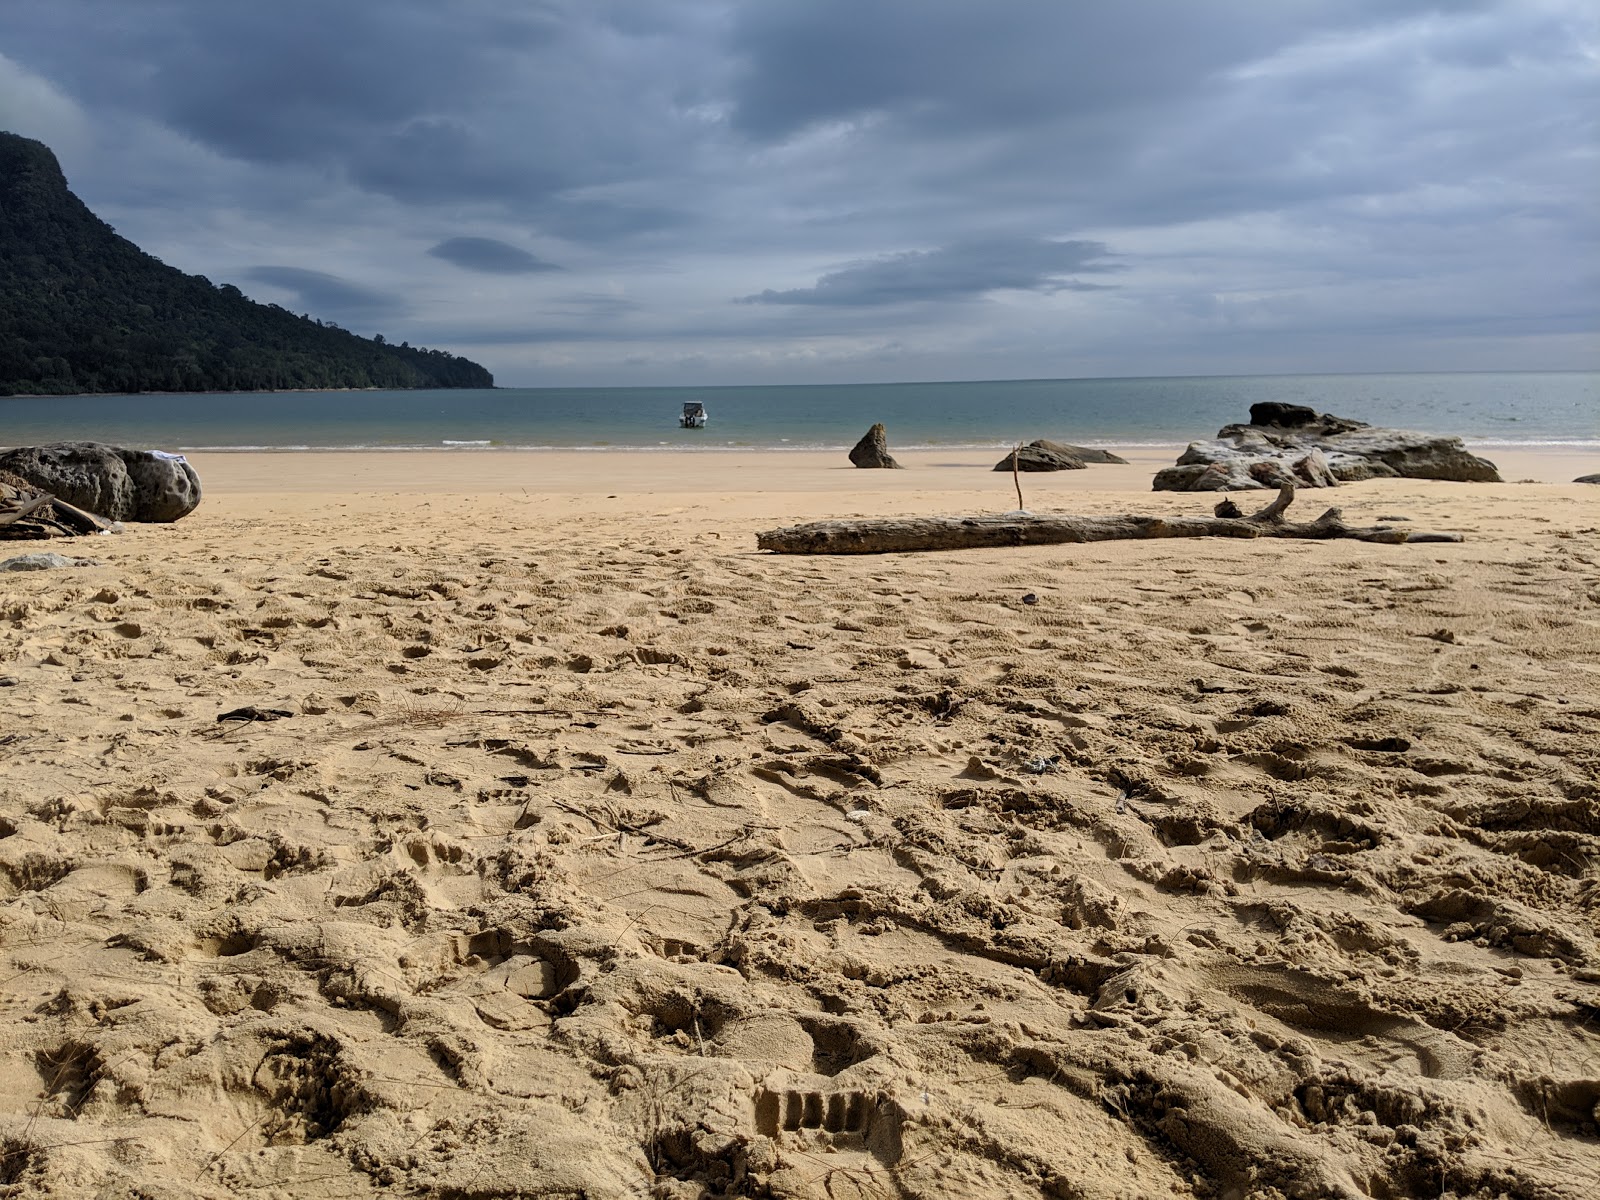 Valokuva Telok Pasir Beachista. pinnalla kirkas hiekka:n kanssa